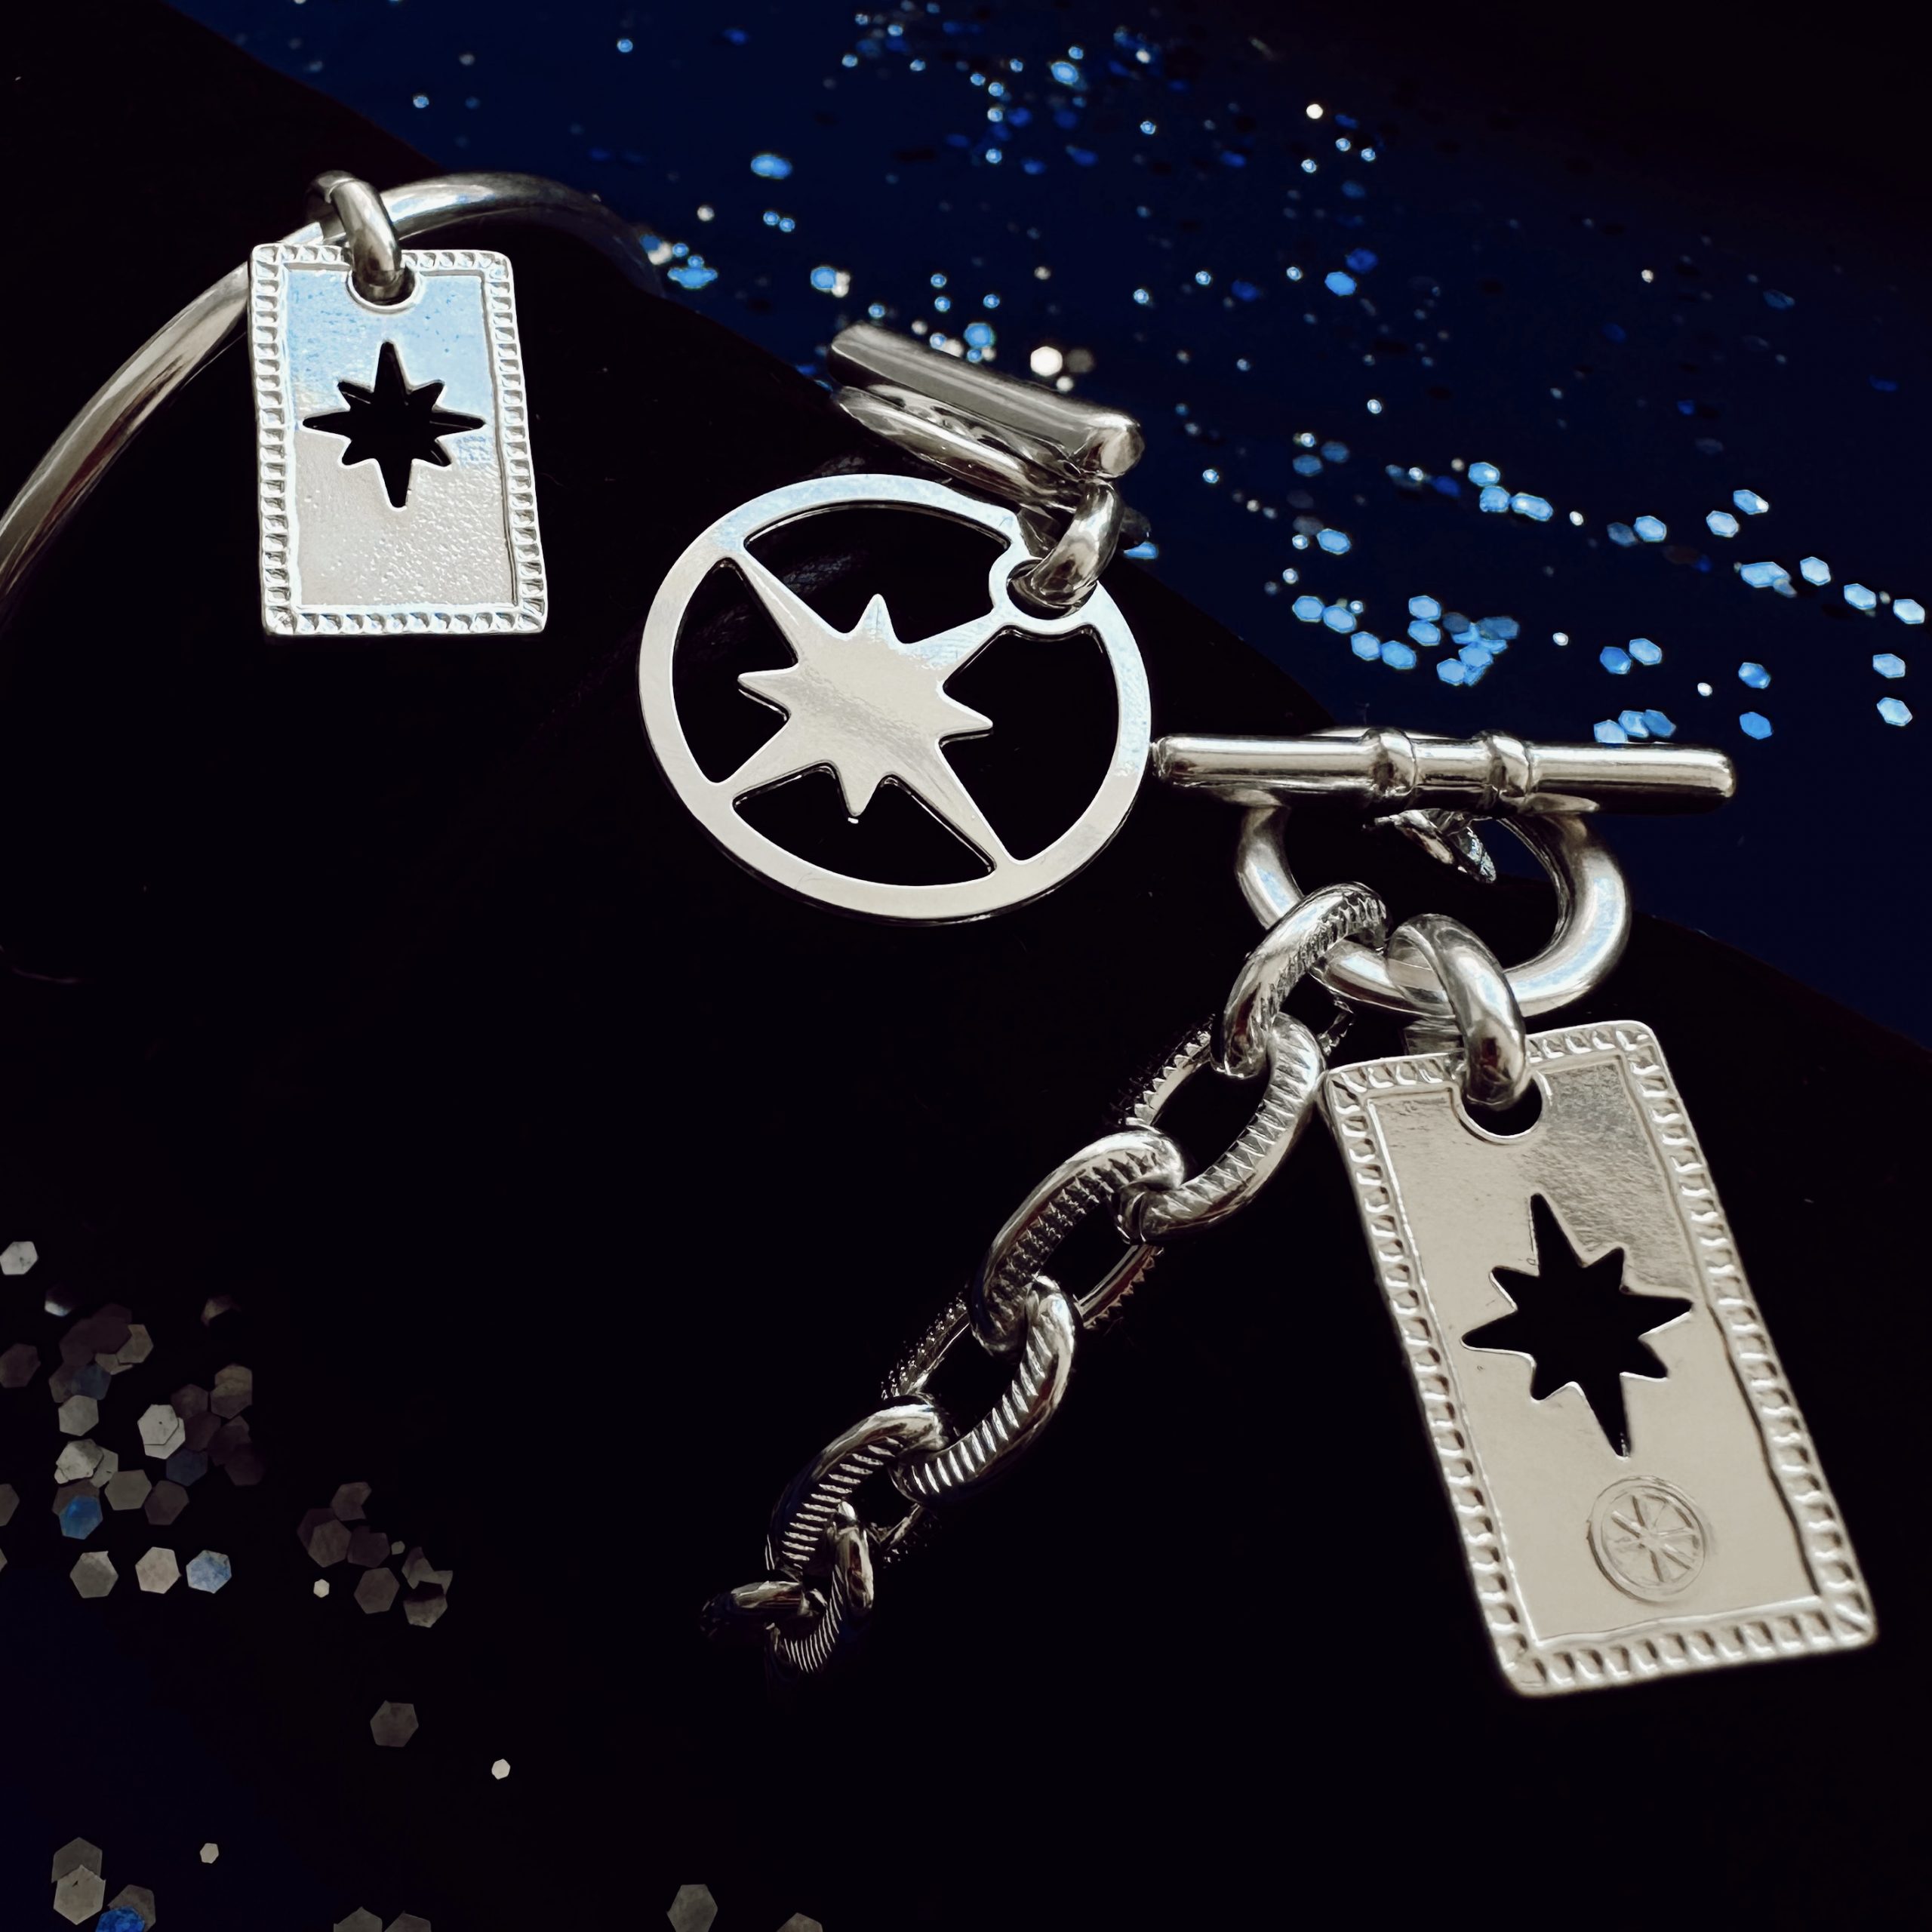 Le symbole de l’étoile polaire en bijouterie